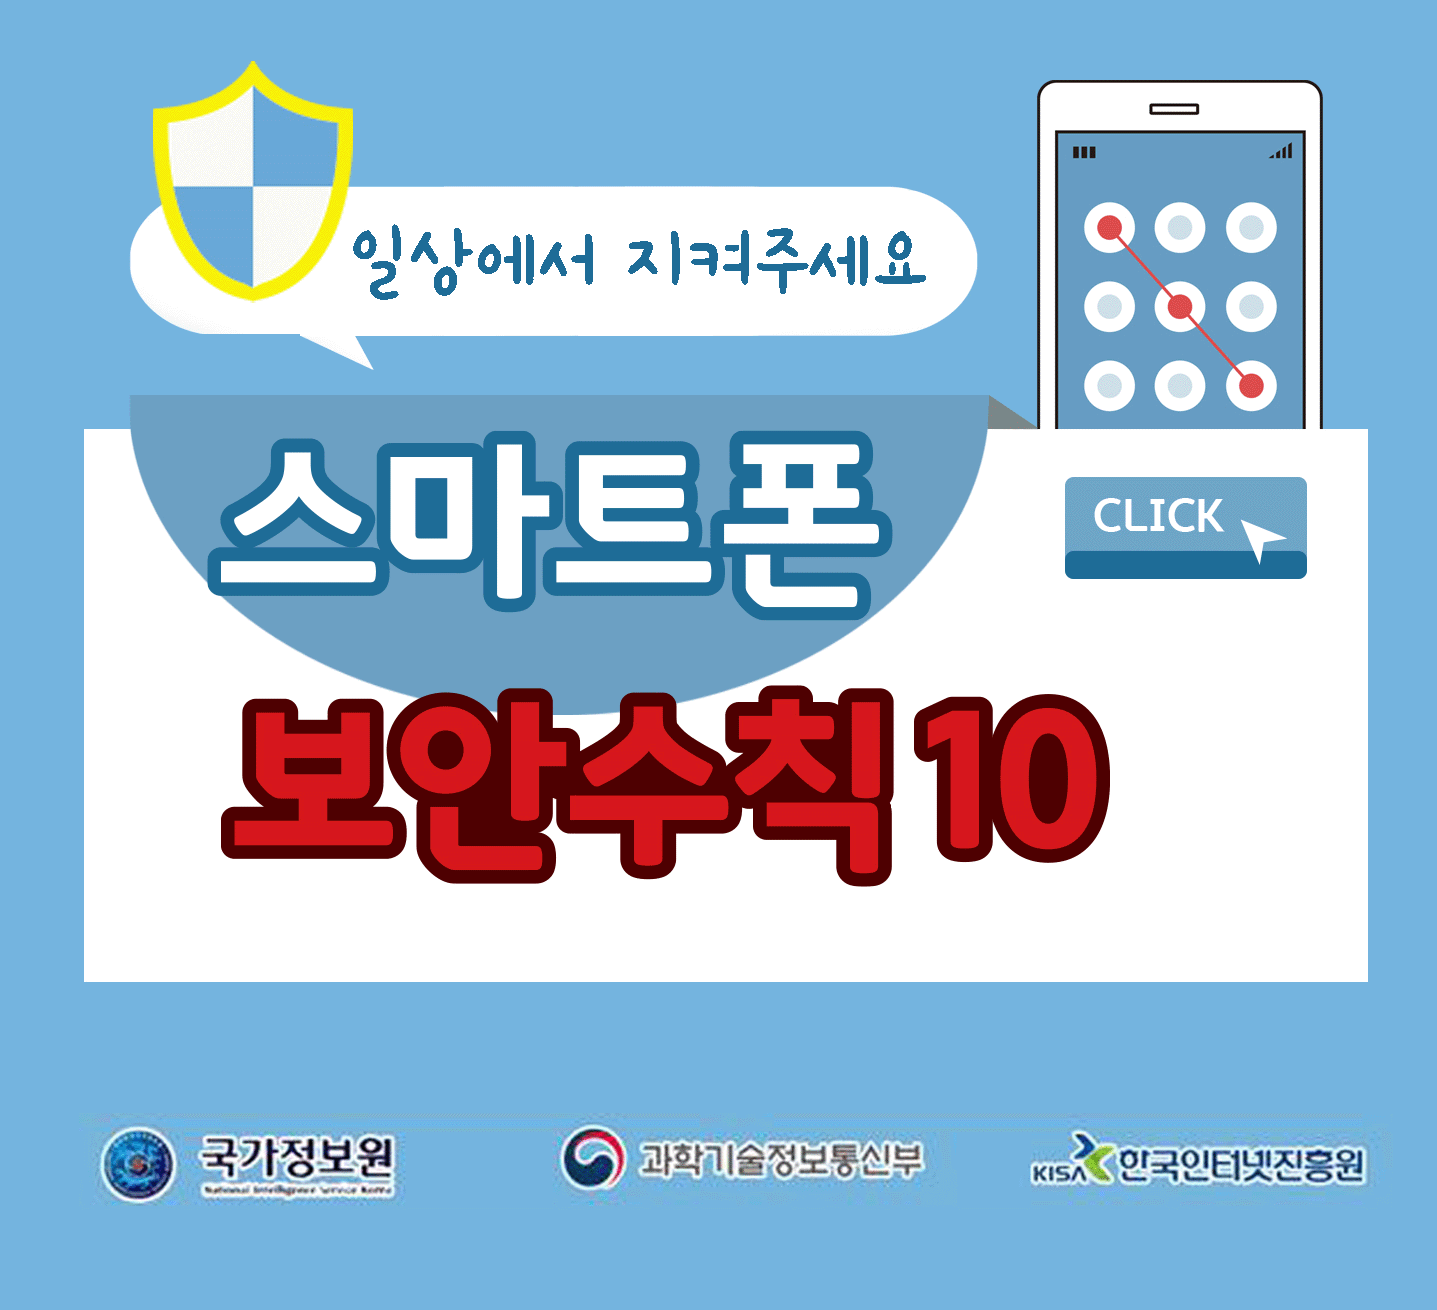 일상에서 지켜주세요
스마트폰 보안수칙 10 CLICK
국가정보원, 과학기술정보통신부, 한국인터넷진흥원;jsessionid=B3EB85308CE22D7E2B55845A32A3528B